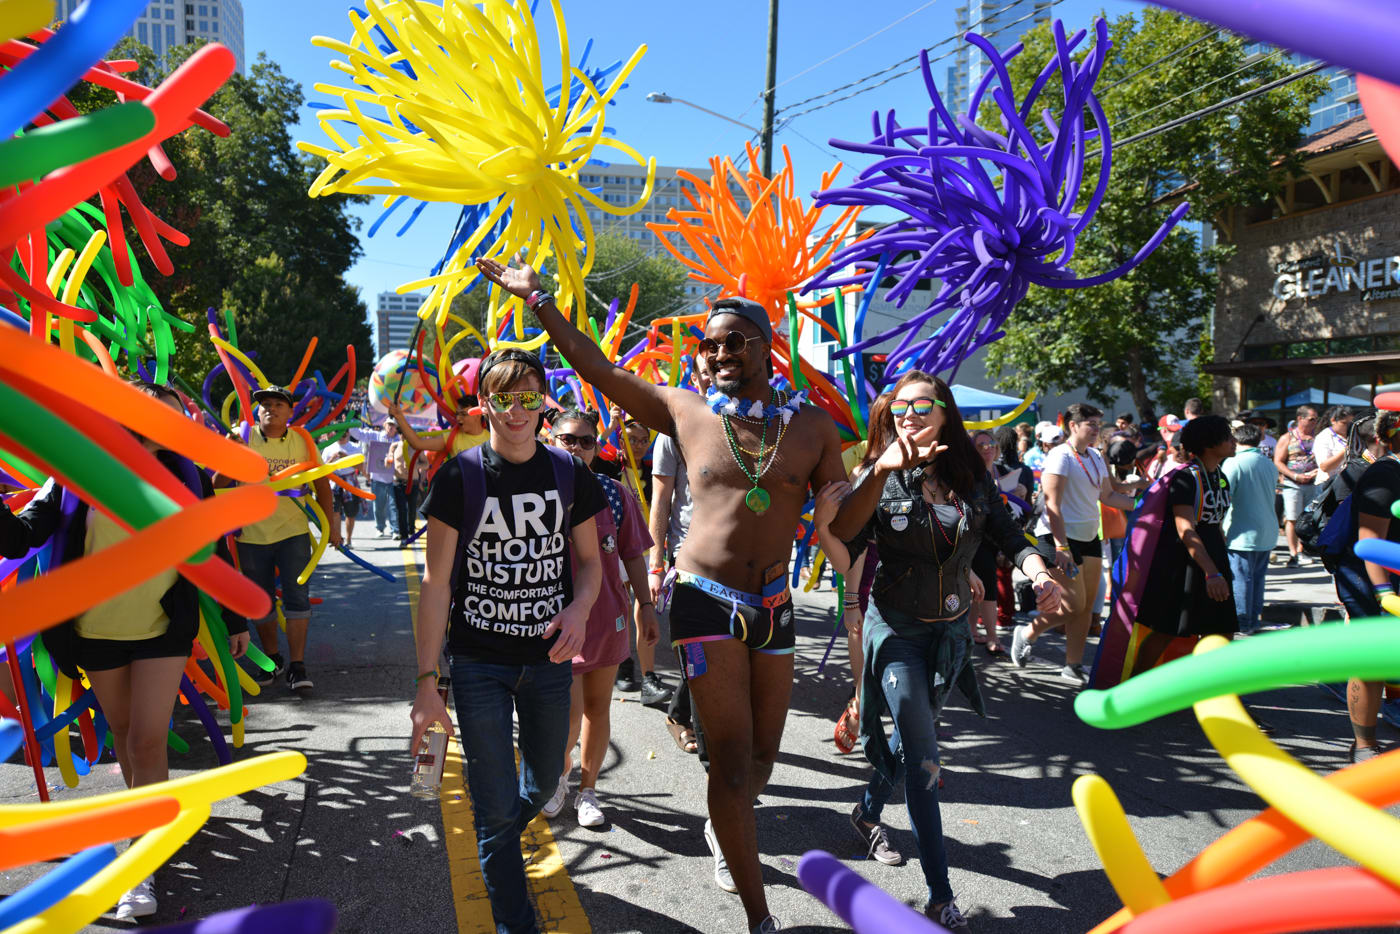 atlanta gay pride 2021 date